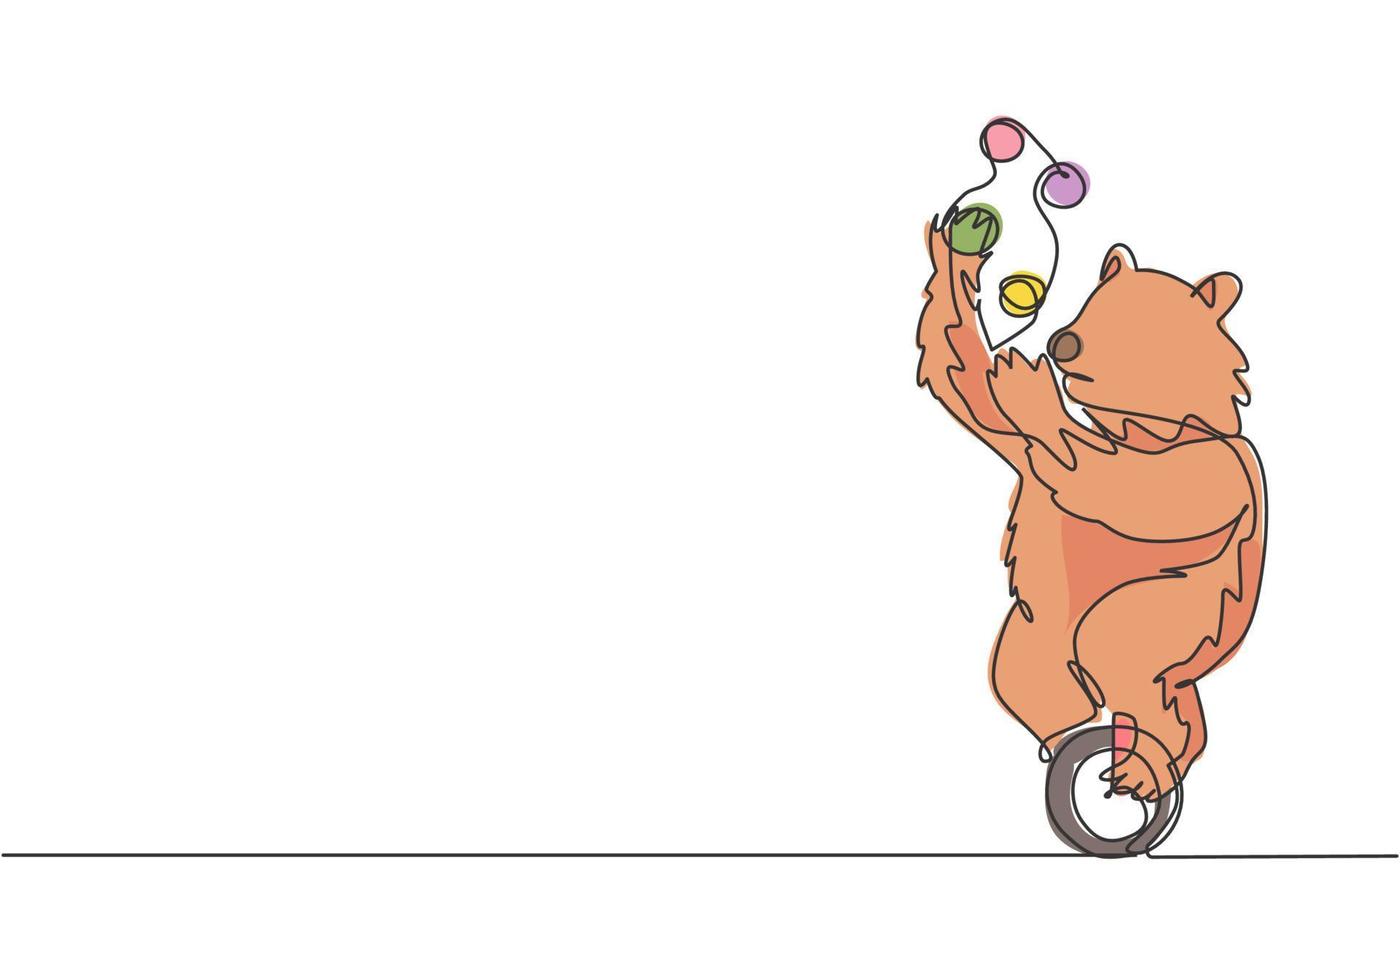 kontinuerlig en linje som ritar en utbildad brunbjörn jonglering på en enhjulig cykel. publiken blev förvånad över björnens prestationskoncept. enkel linje rita design vektor grafisk illustration.